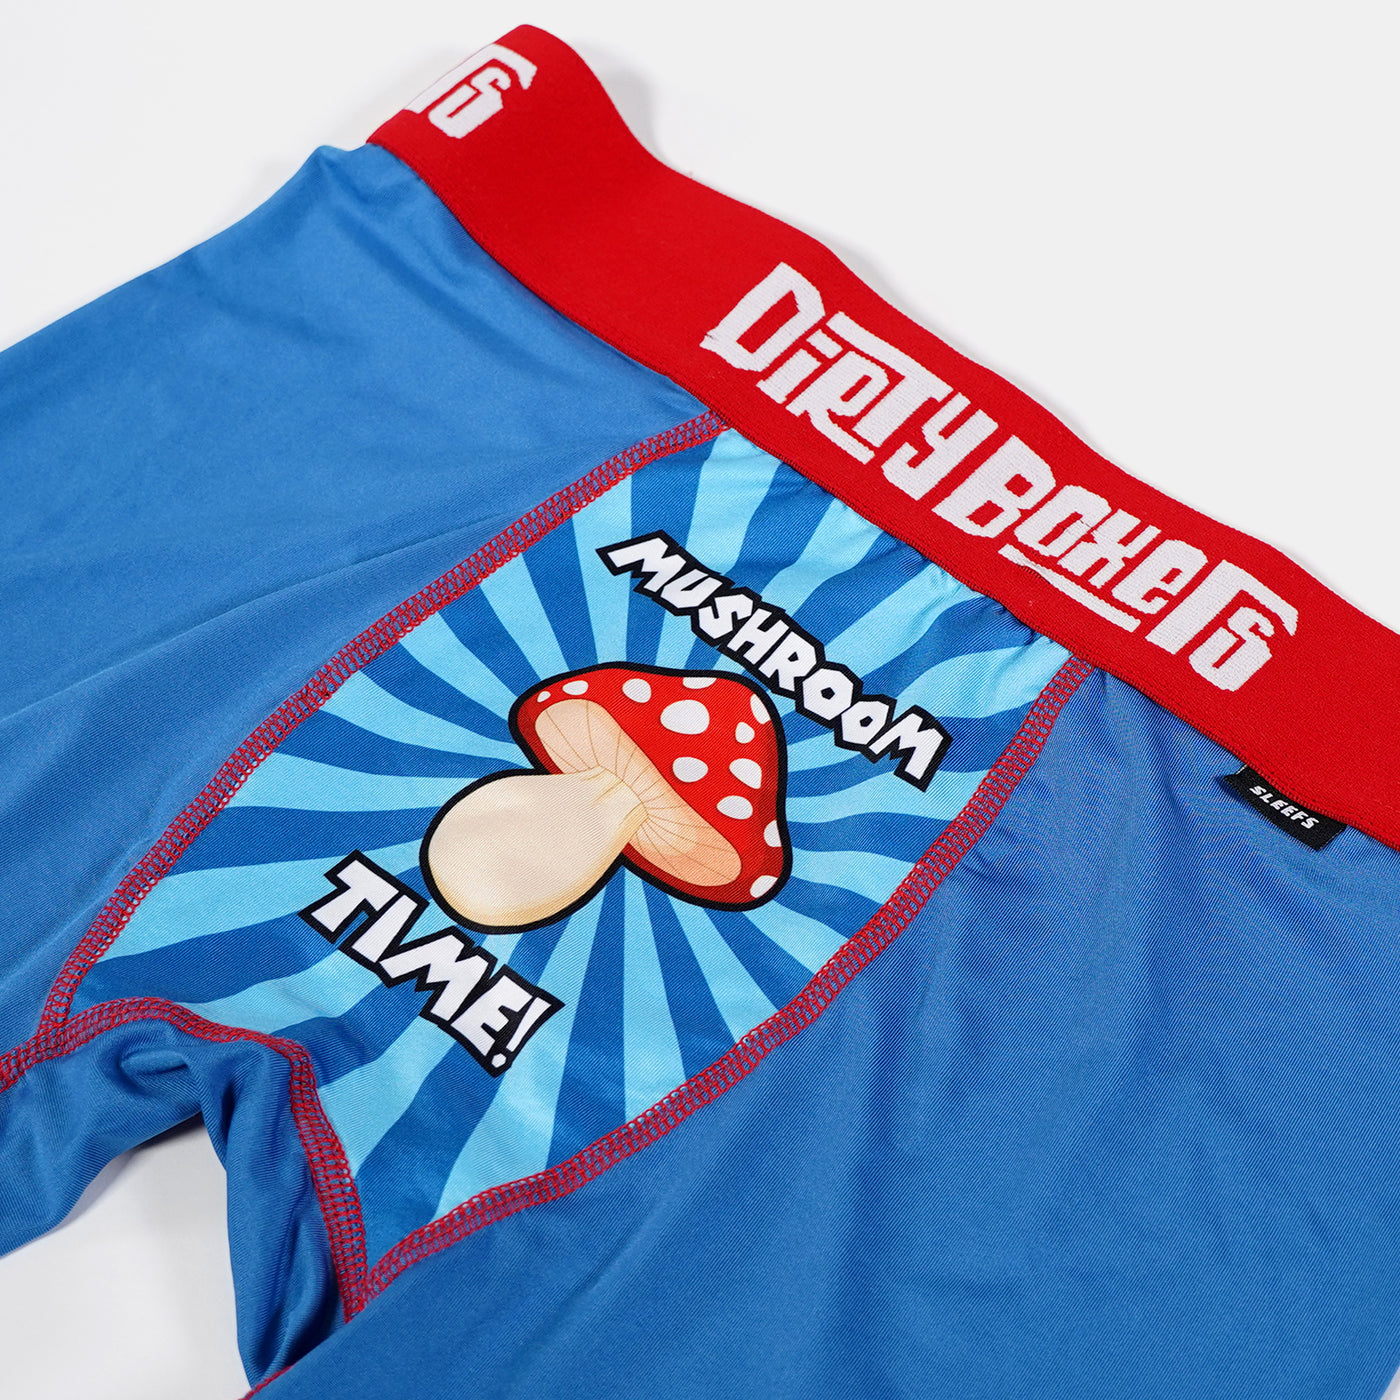 Mushroom Time Dirty Boxers Men's Underwear